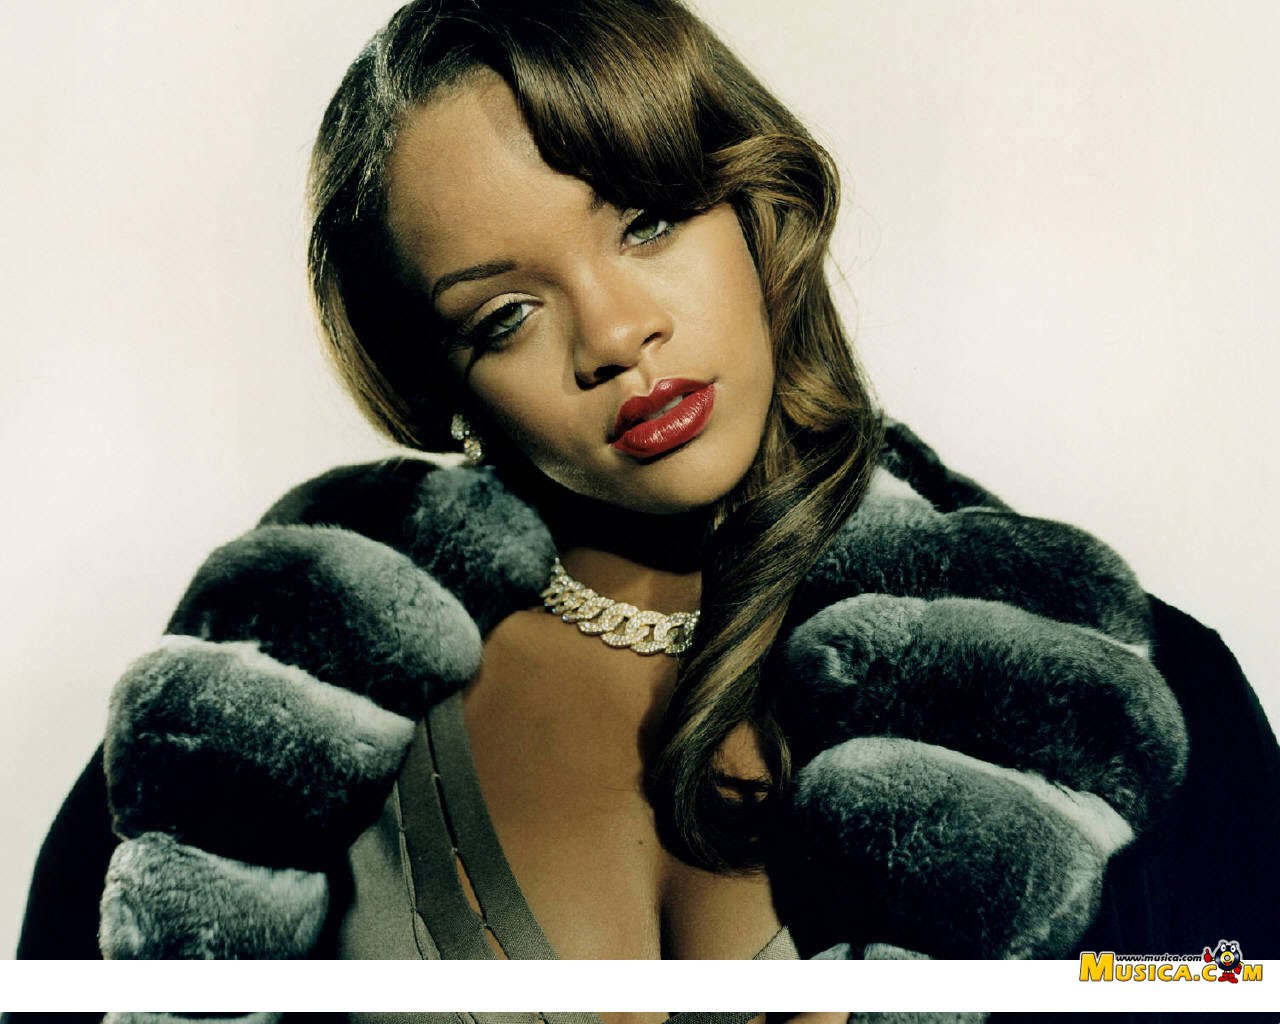 Fondo de pantalla de Rihanna